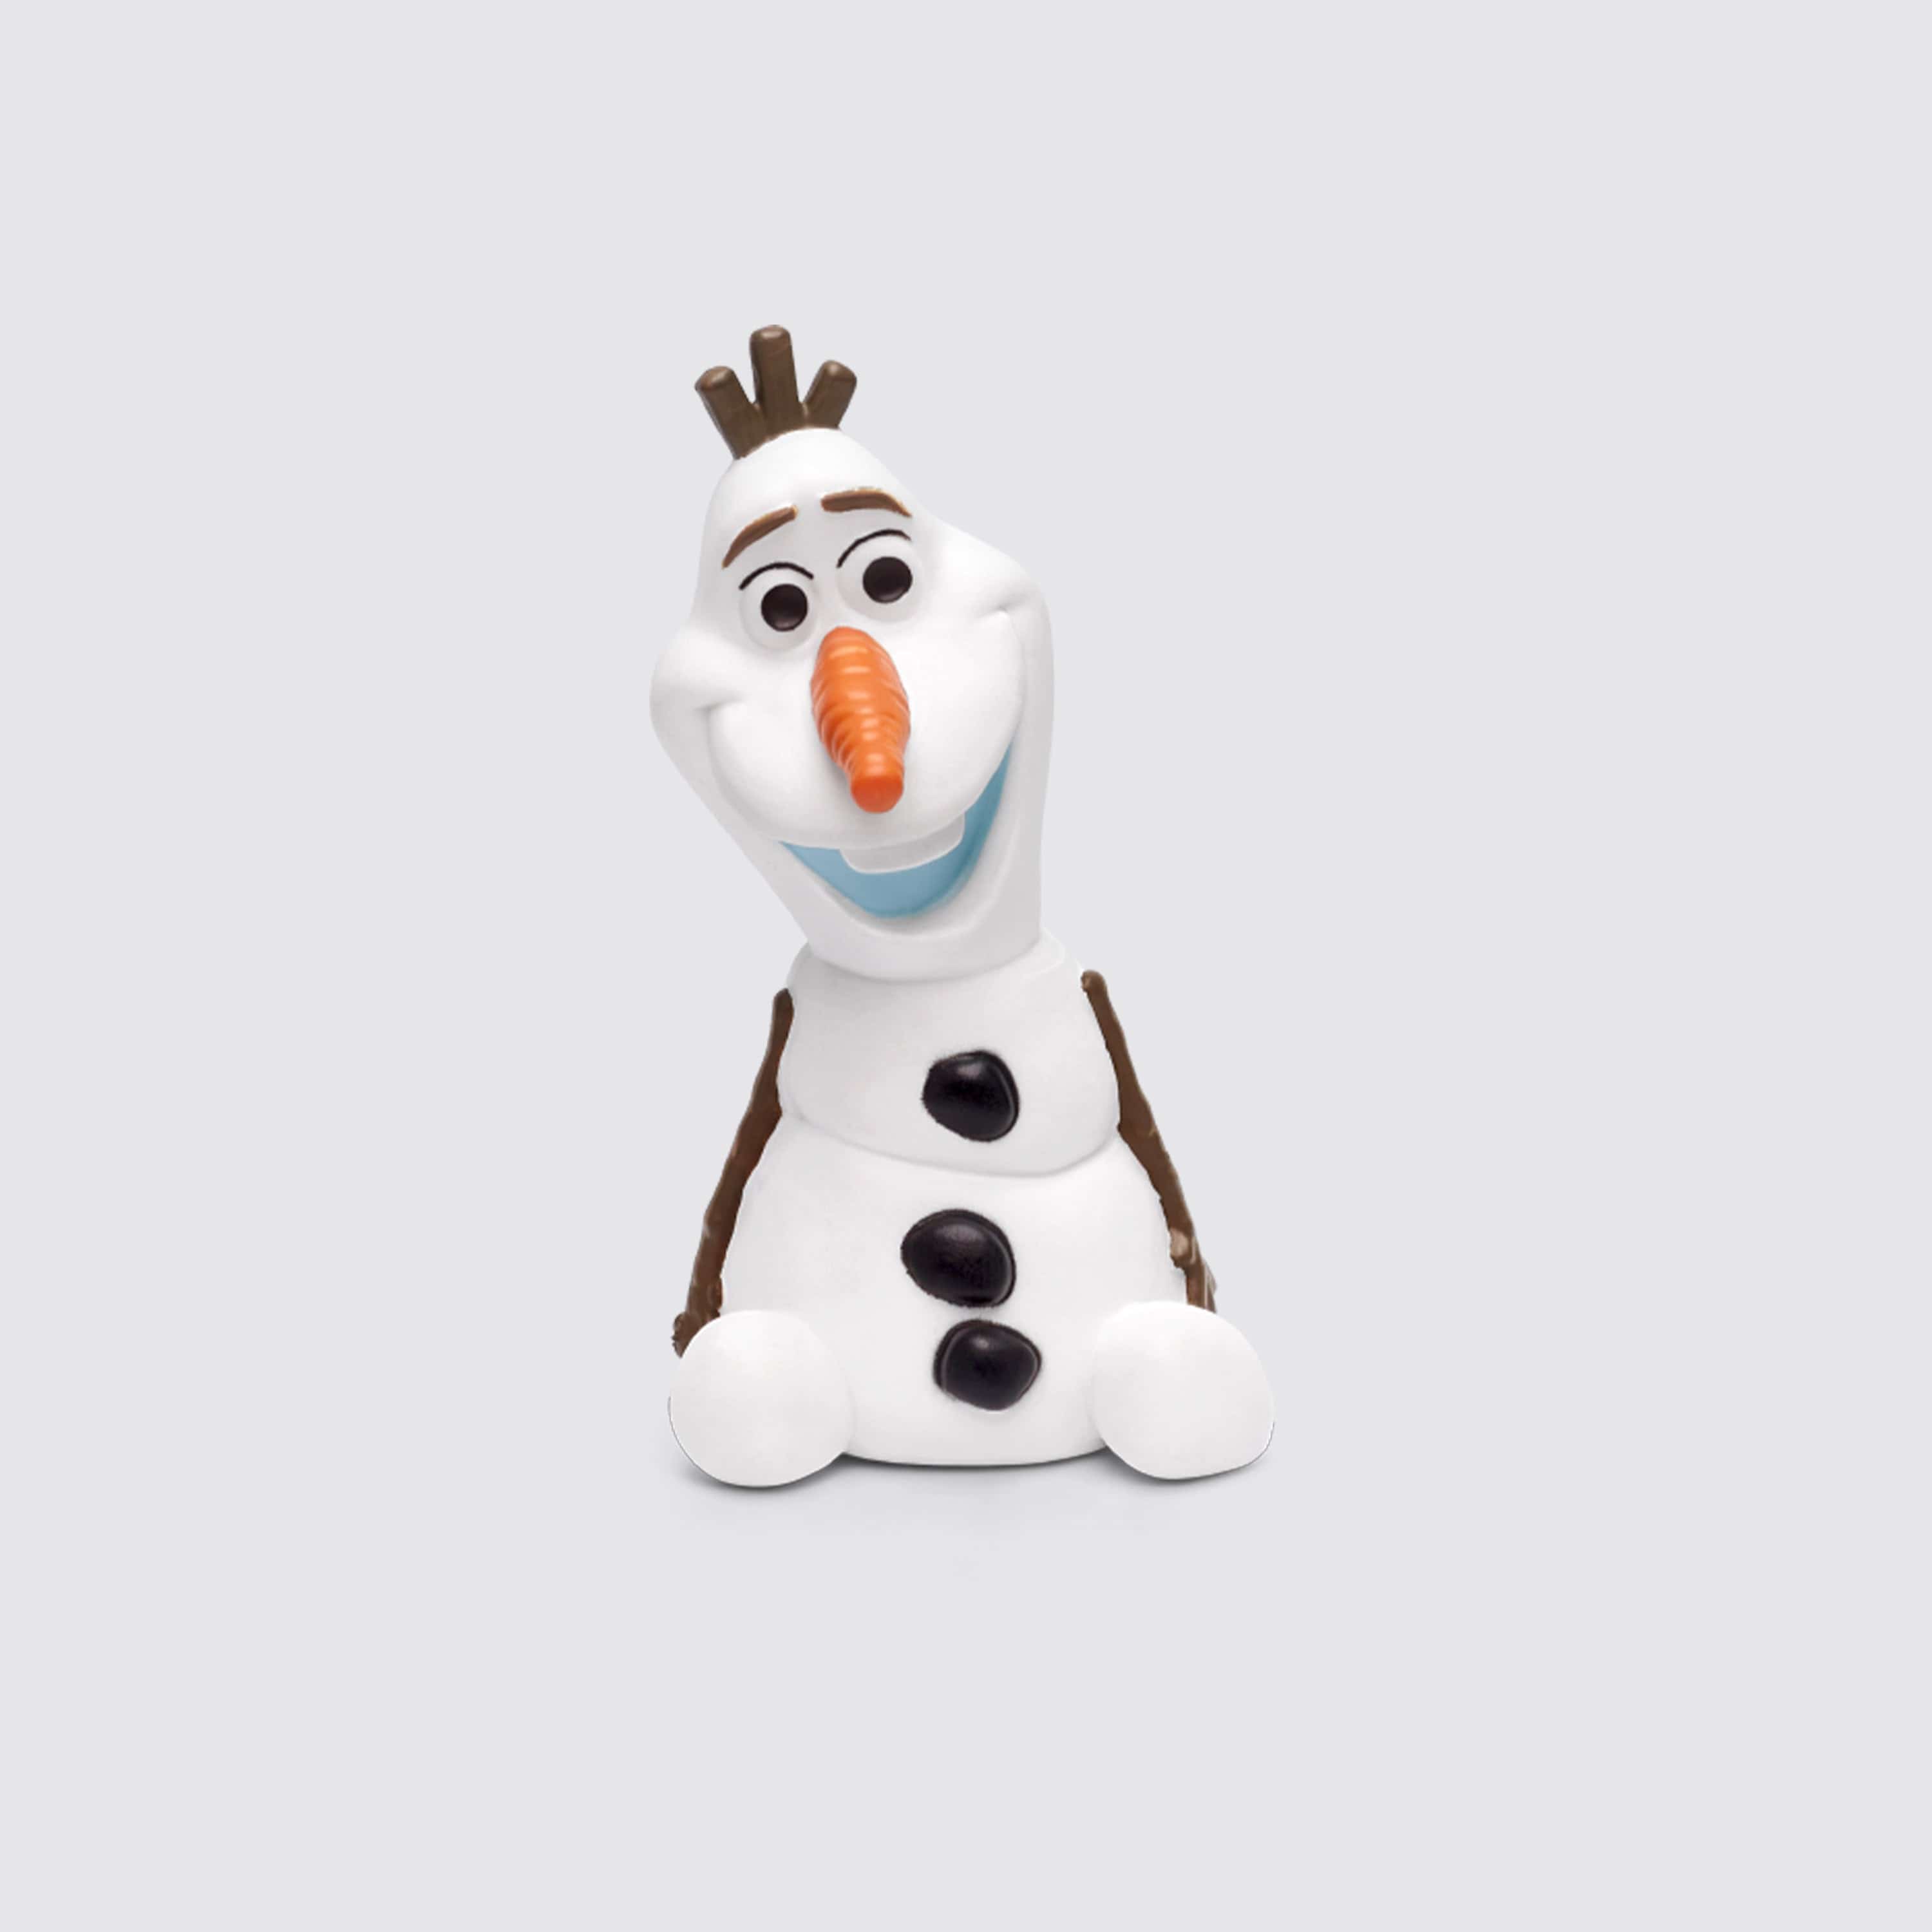 ONWAAR plannen Hijgend tonies® I Disney Frozen: Olaf I Buy now